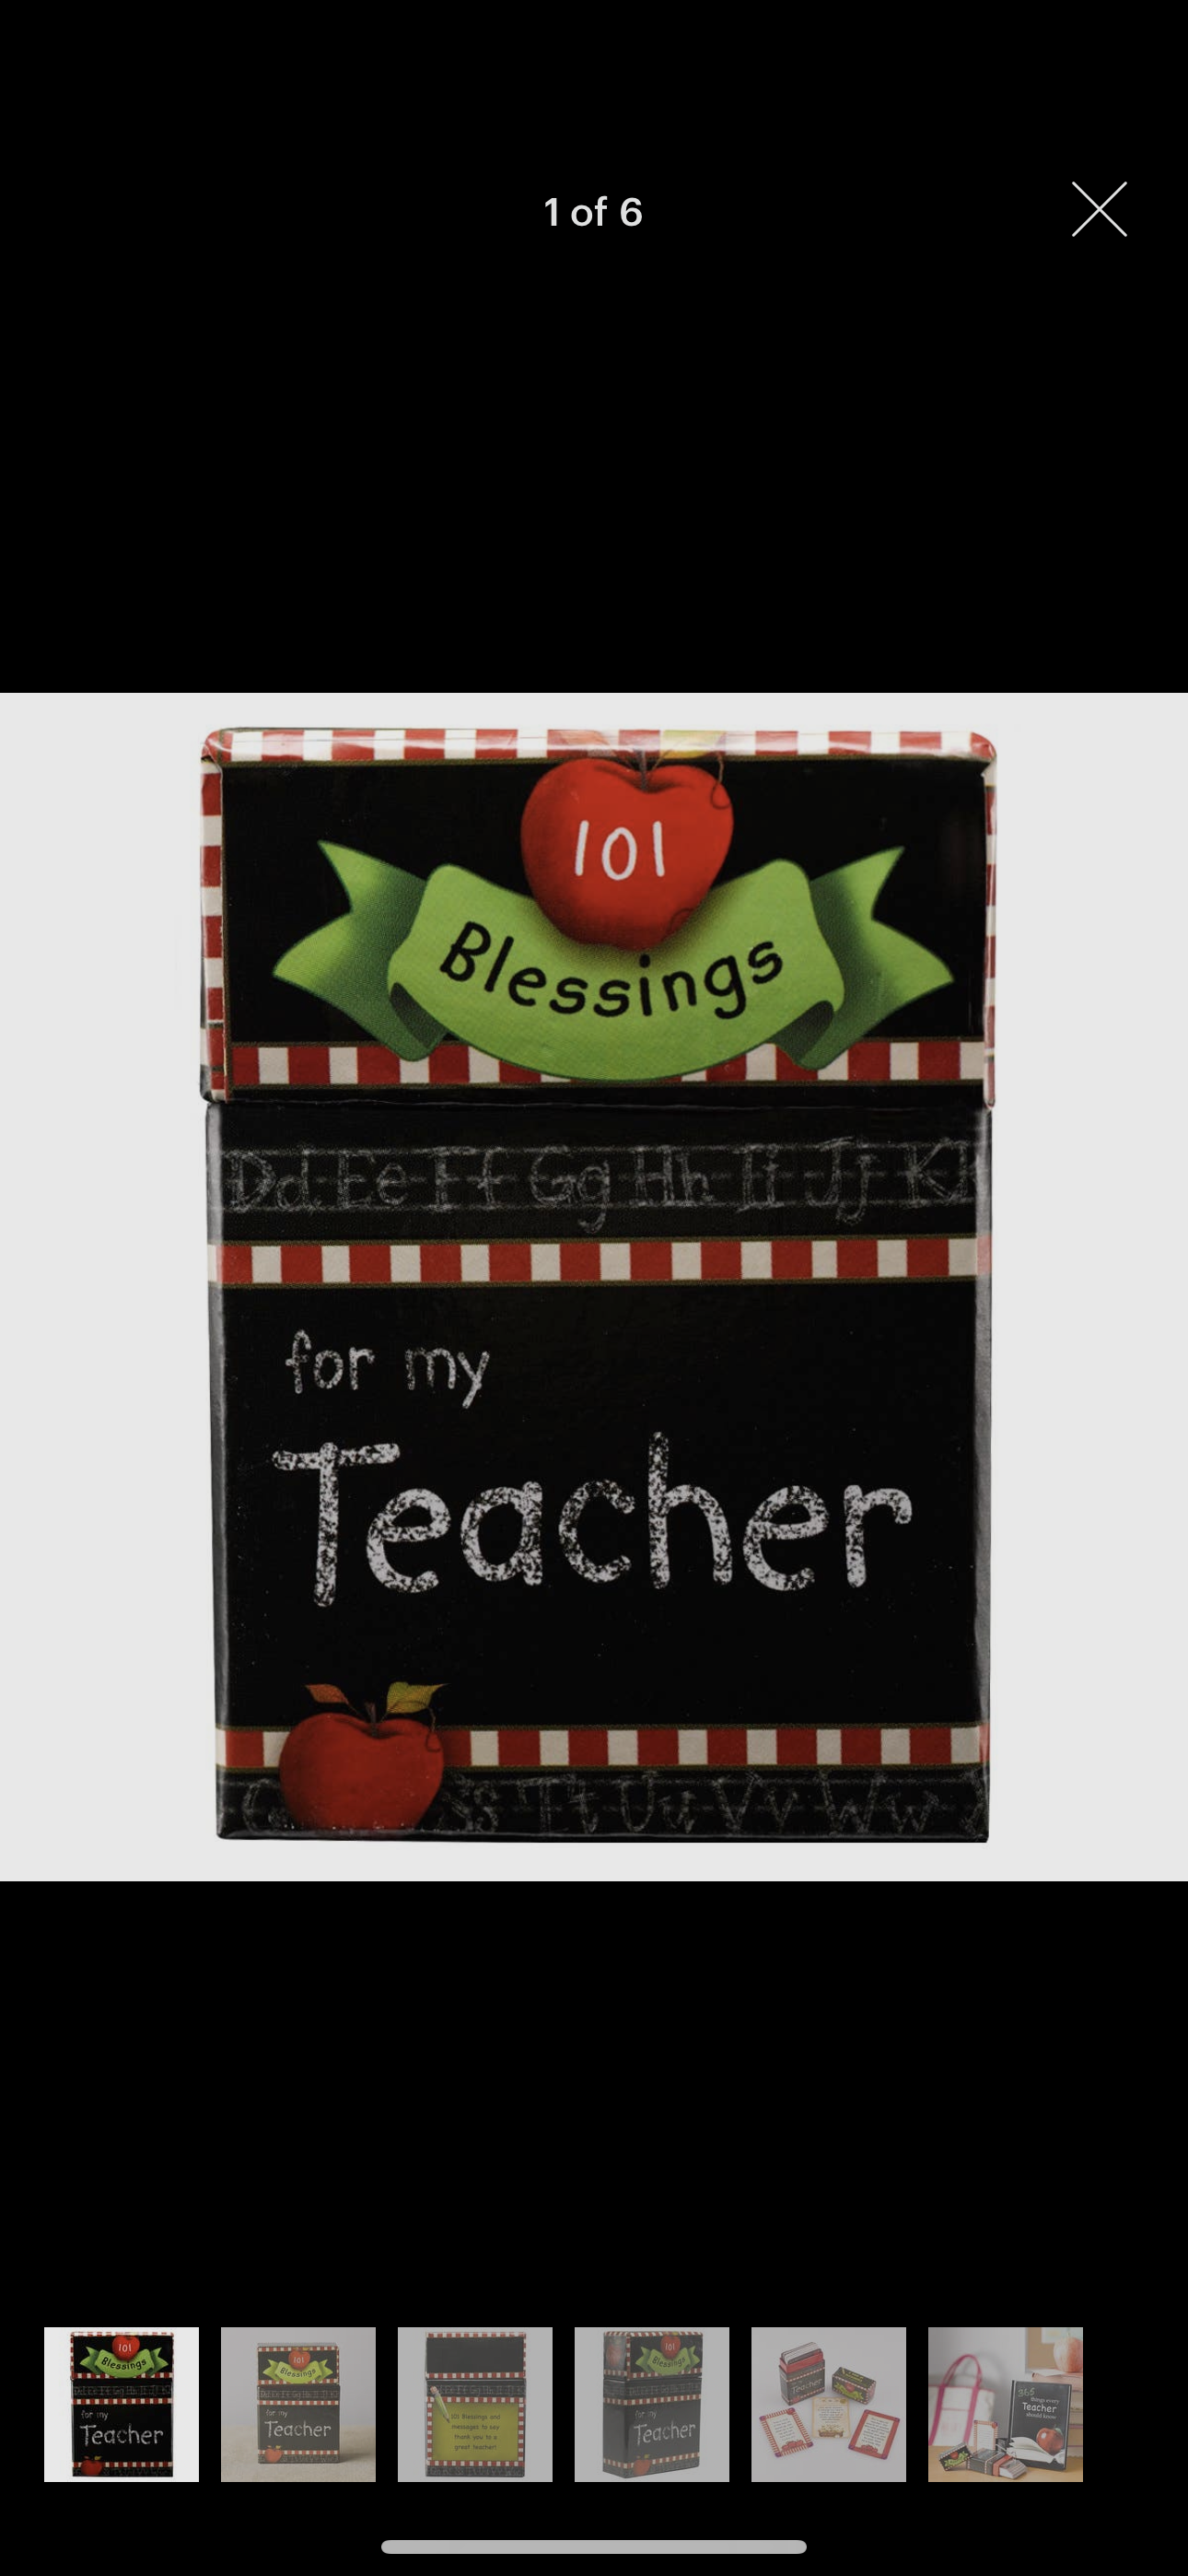 101 BLESSINGS FOR MY TEACHER